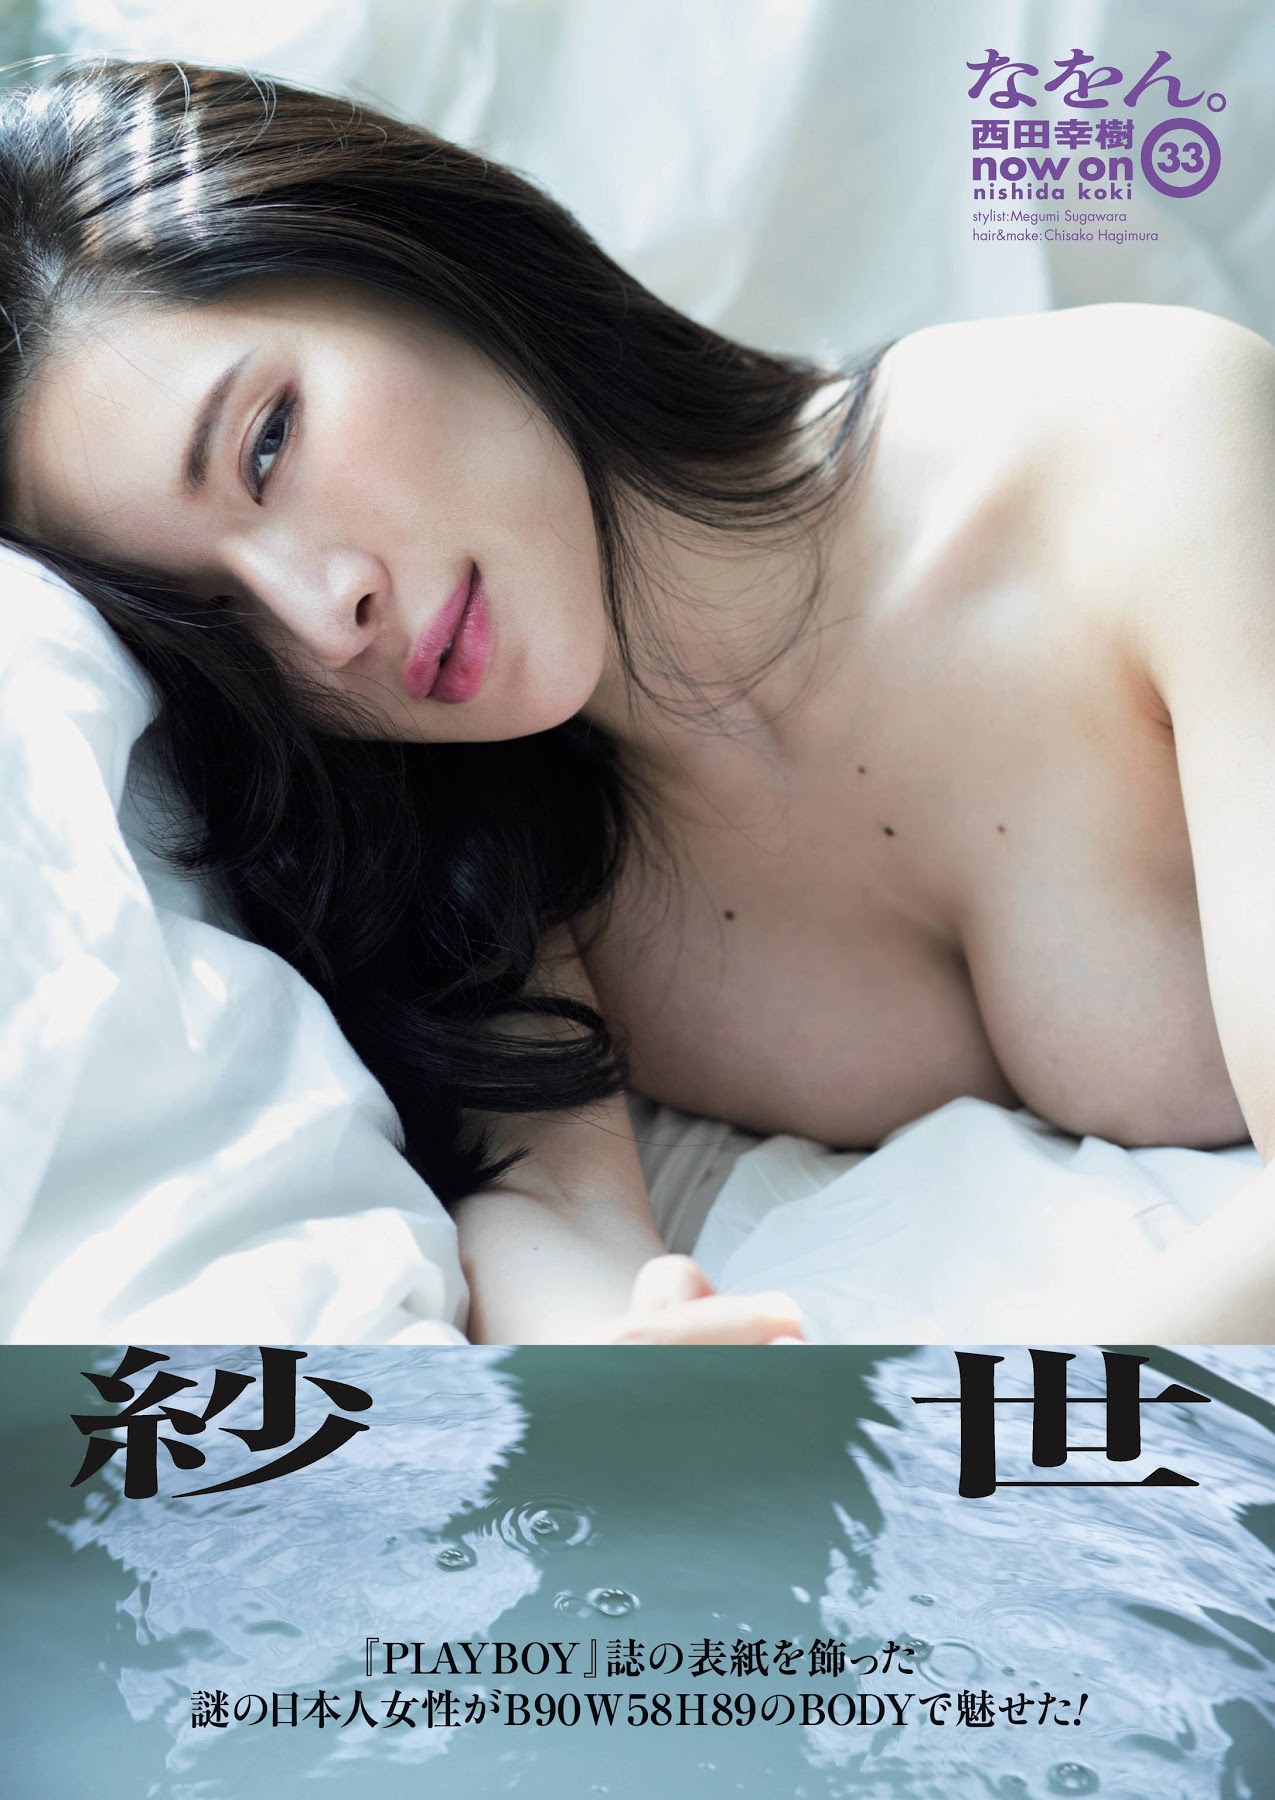 紗世 Playboy誌の表紙を飾った謎の日本人女性 Ero Ero Paradise エロ画像のまとめエログ